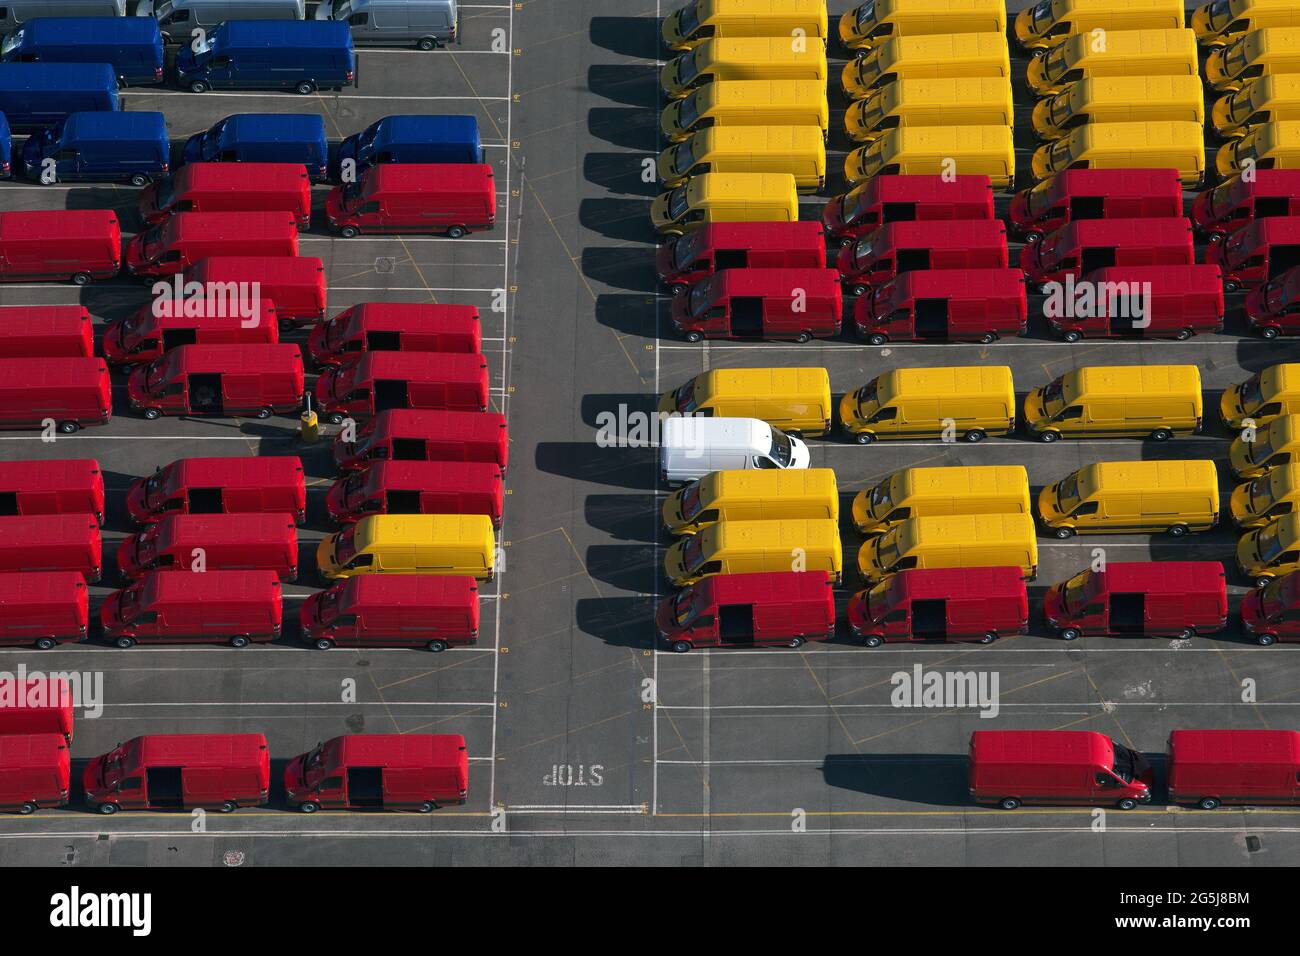 UK, Essex, Purfleet Docks, Aerial view of rows of colorful vans Stock Photo